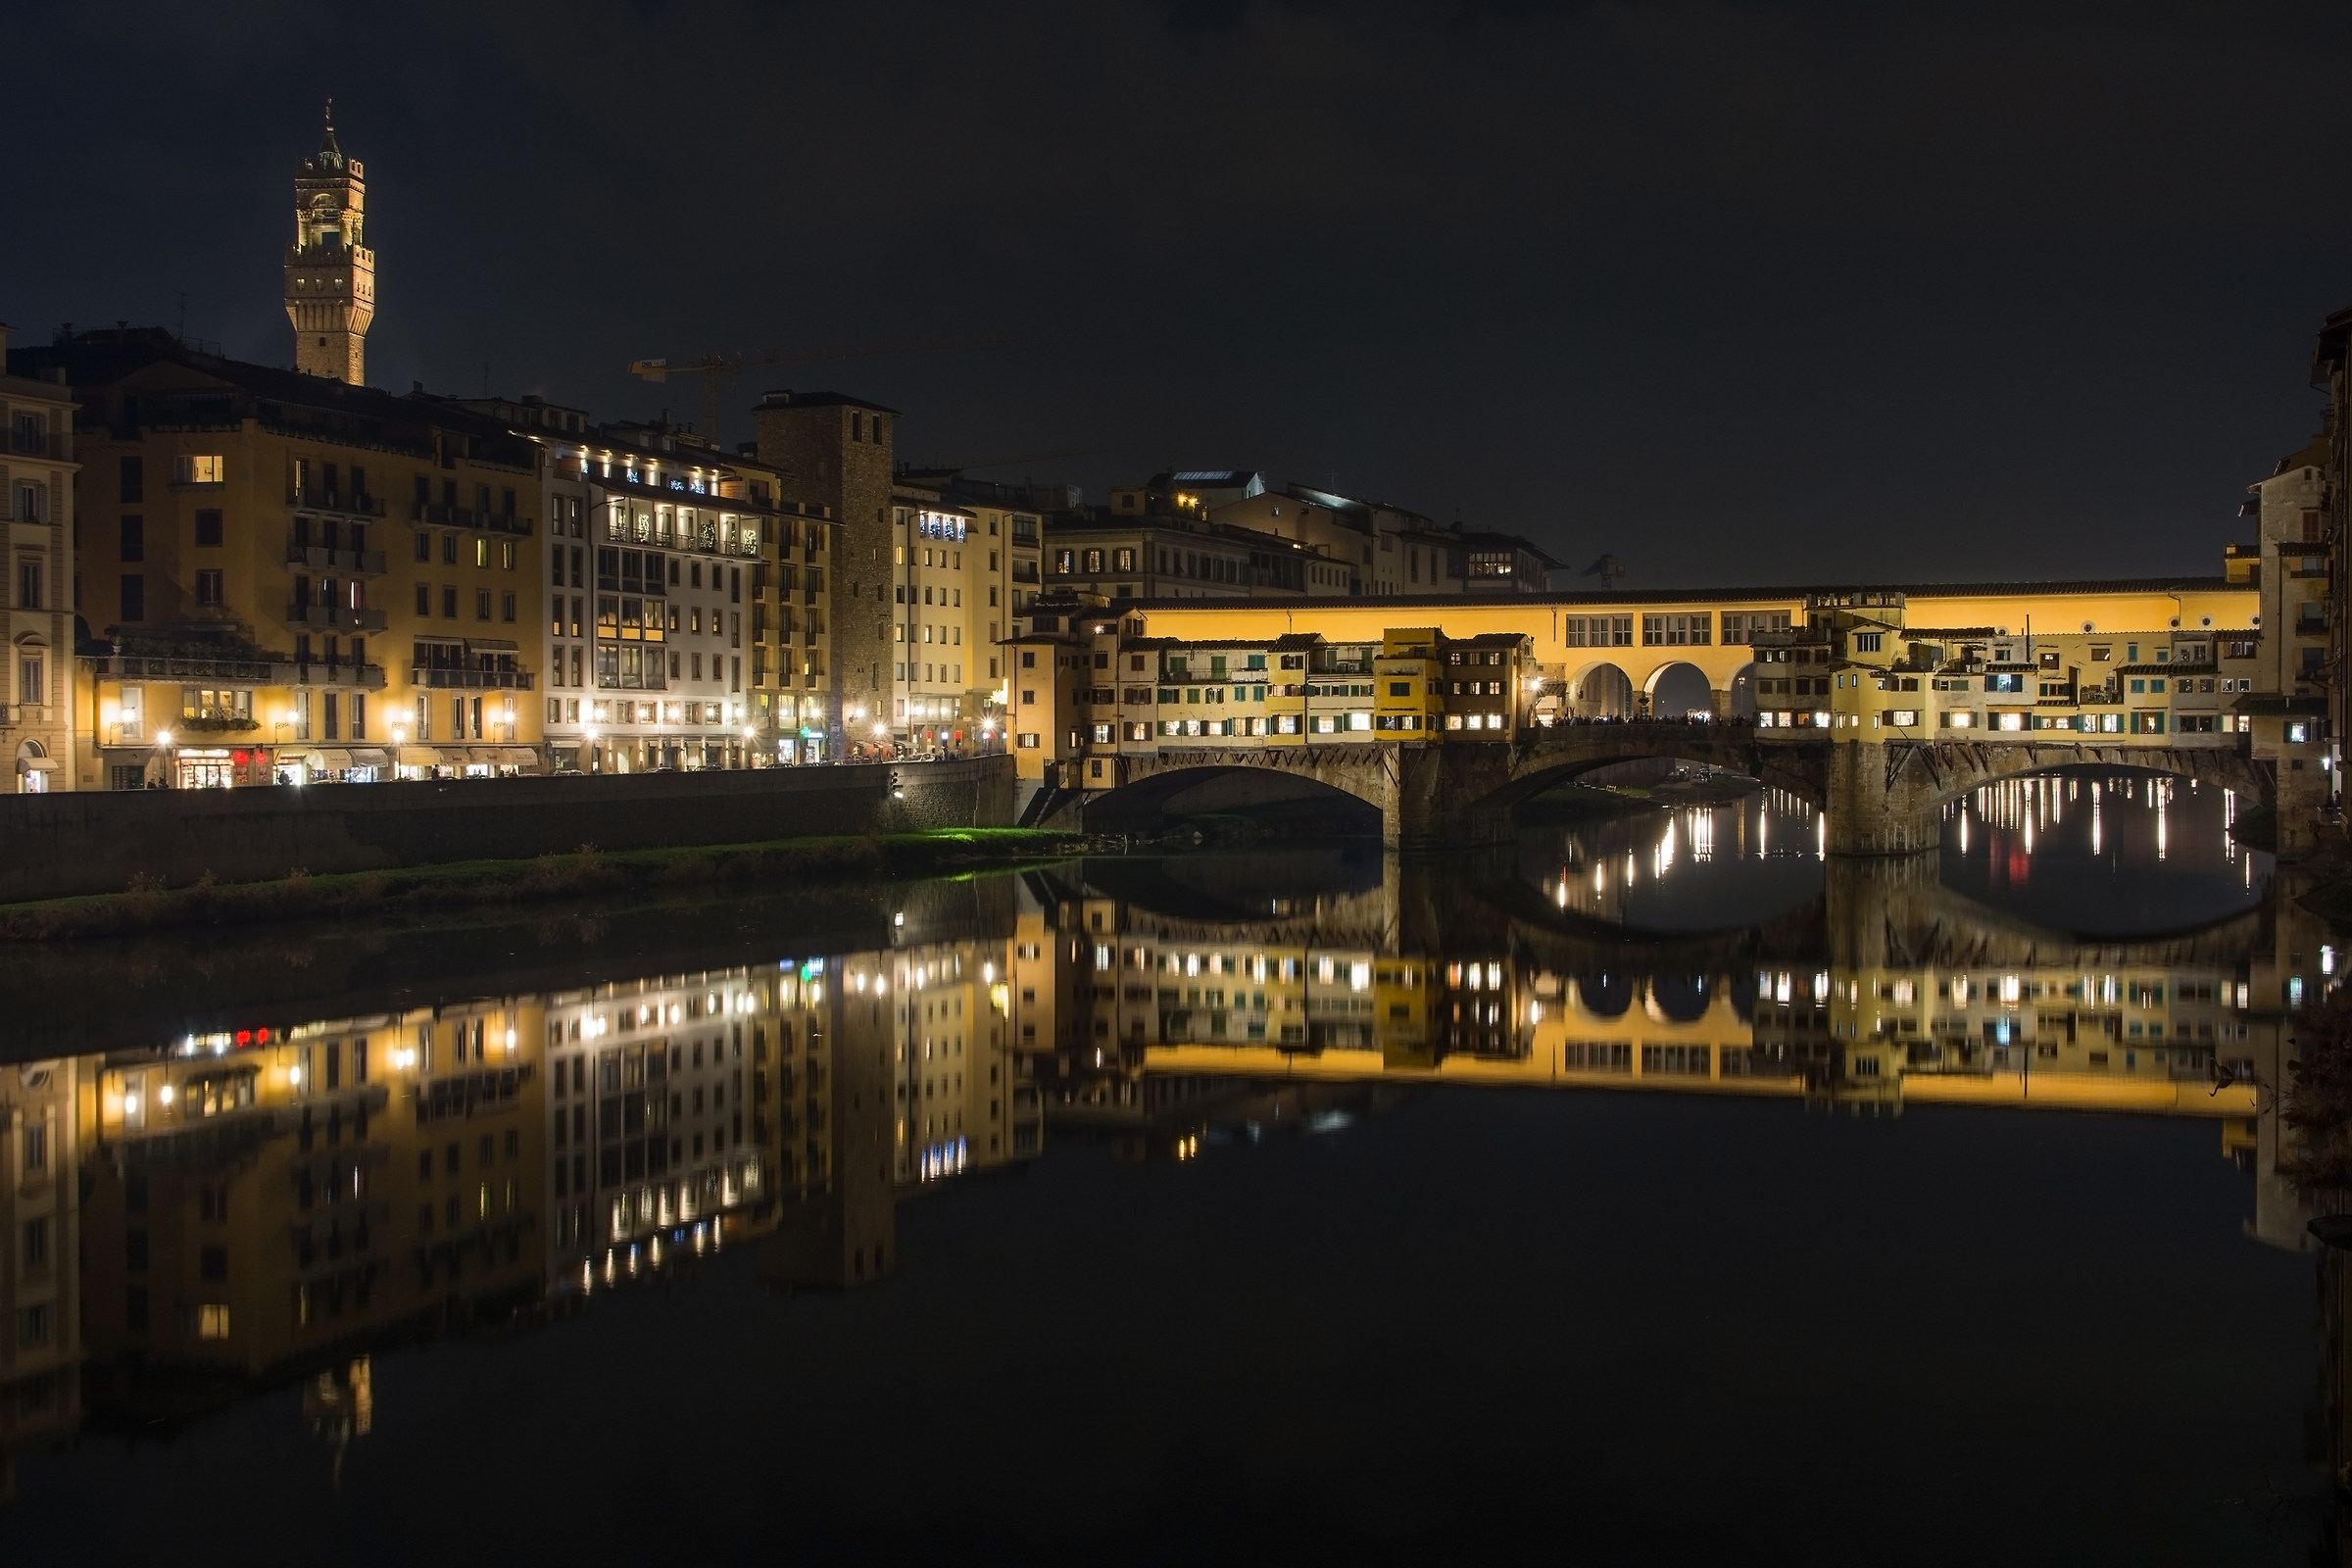 Scende la sera sul Ponte Vecchio...